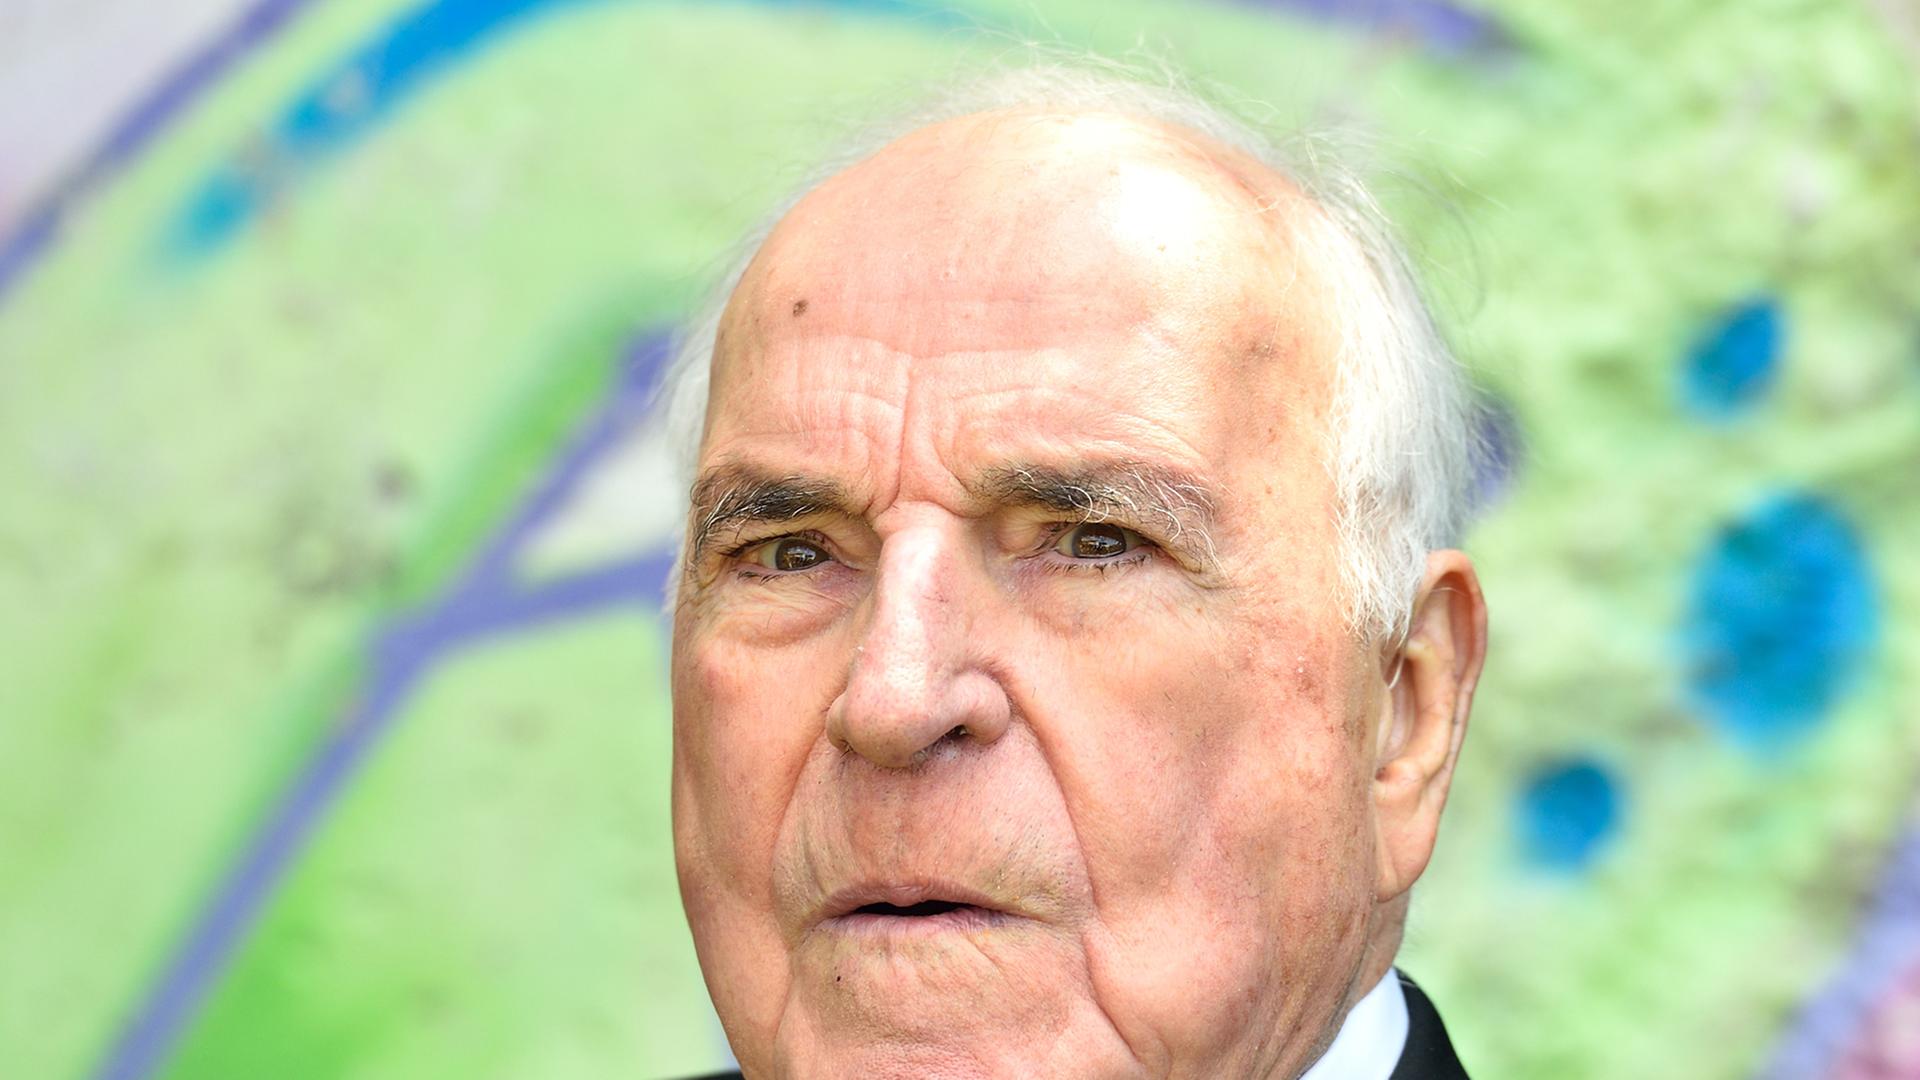 Der ehemalige Bundeskanzler Helmut Kohl (CDU) sitzt am 16.05.2014 in Oggersheim (Rheinland-Pfalz) im Garten seines Wohnhauses vor einem Originalstück der Berliner Mauer.